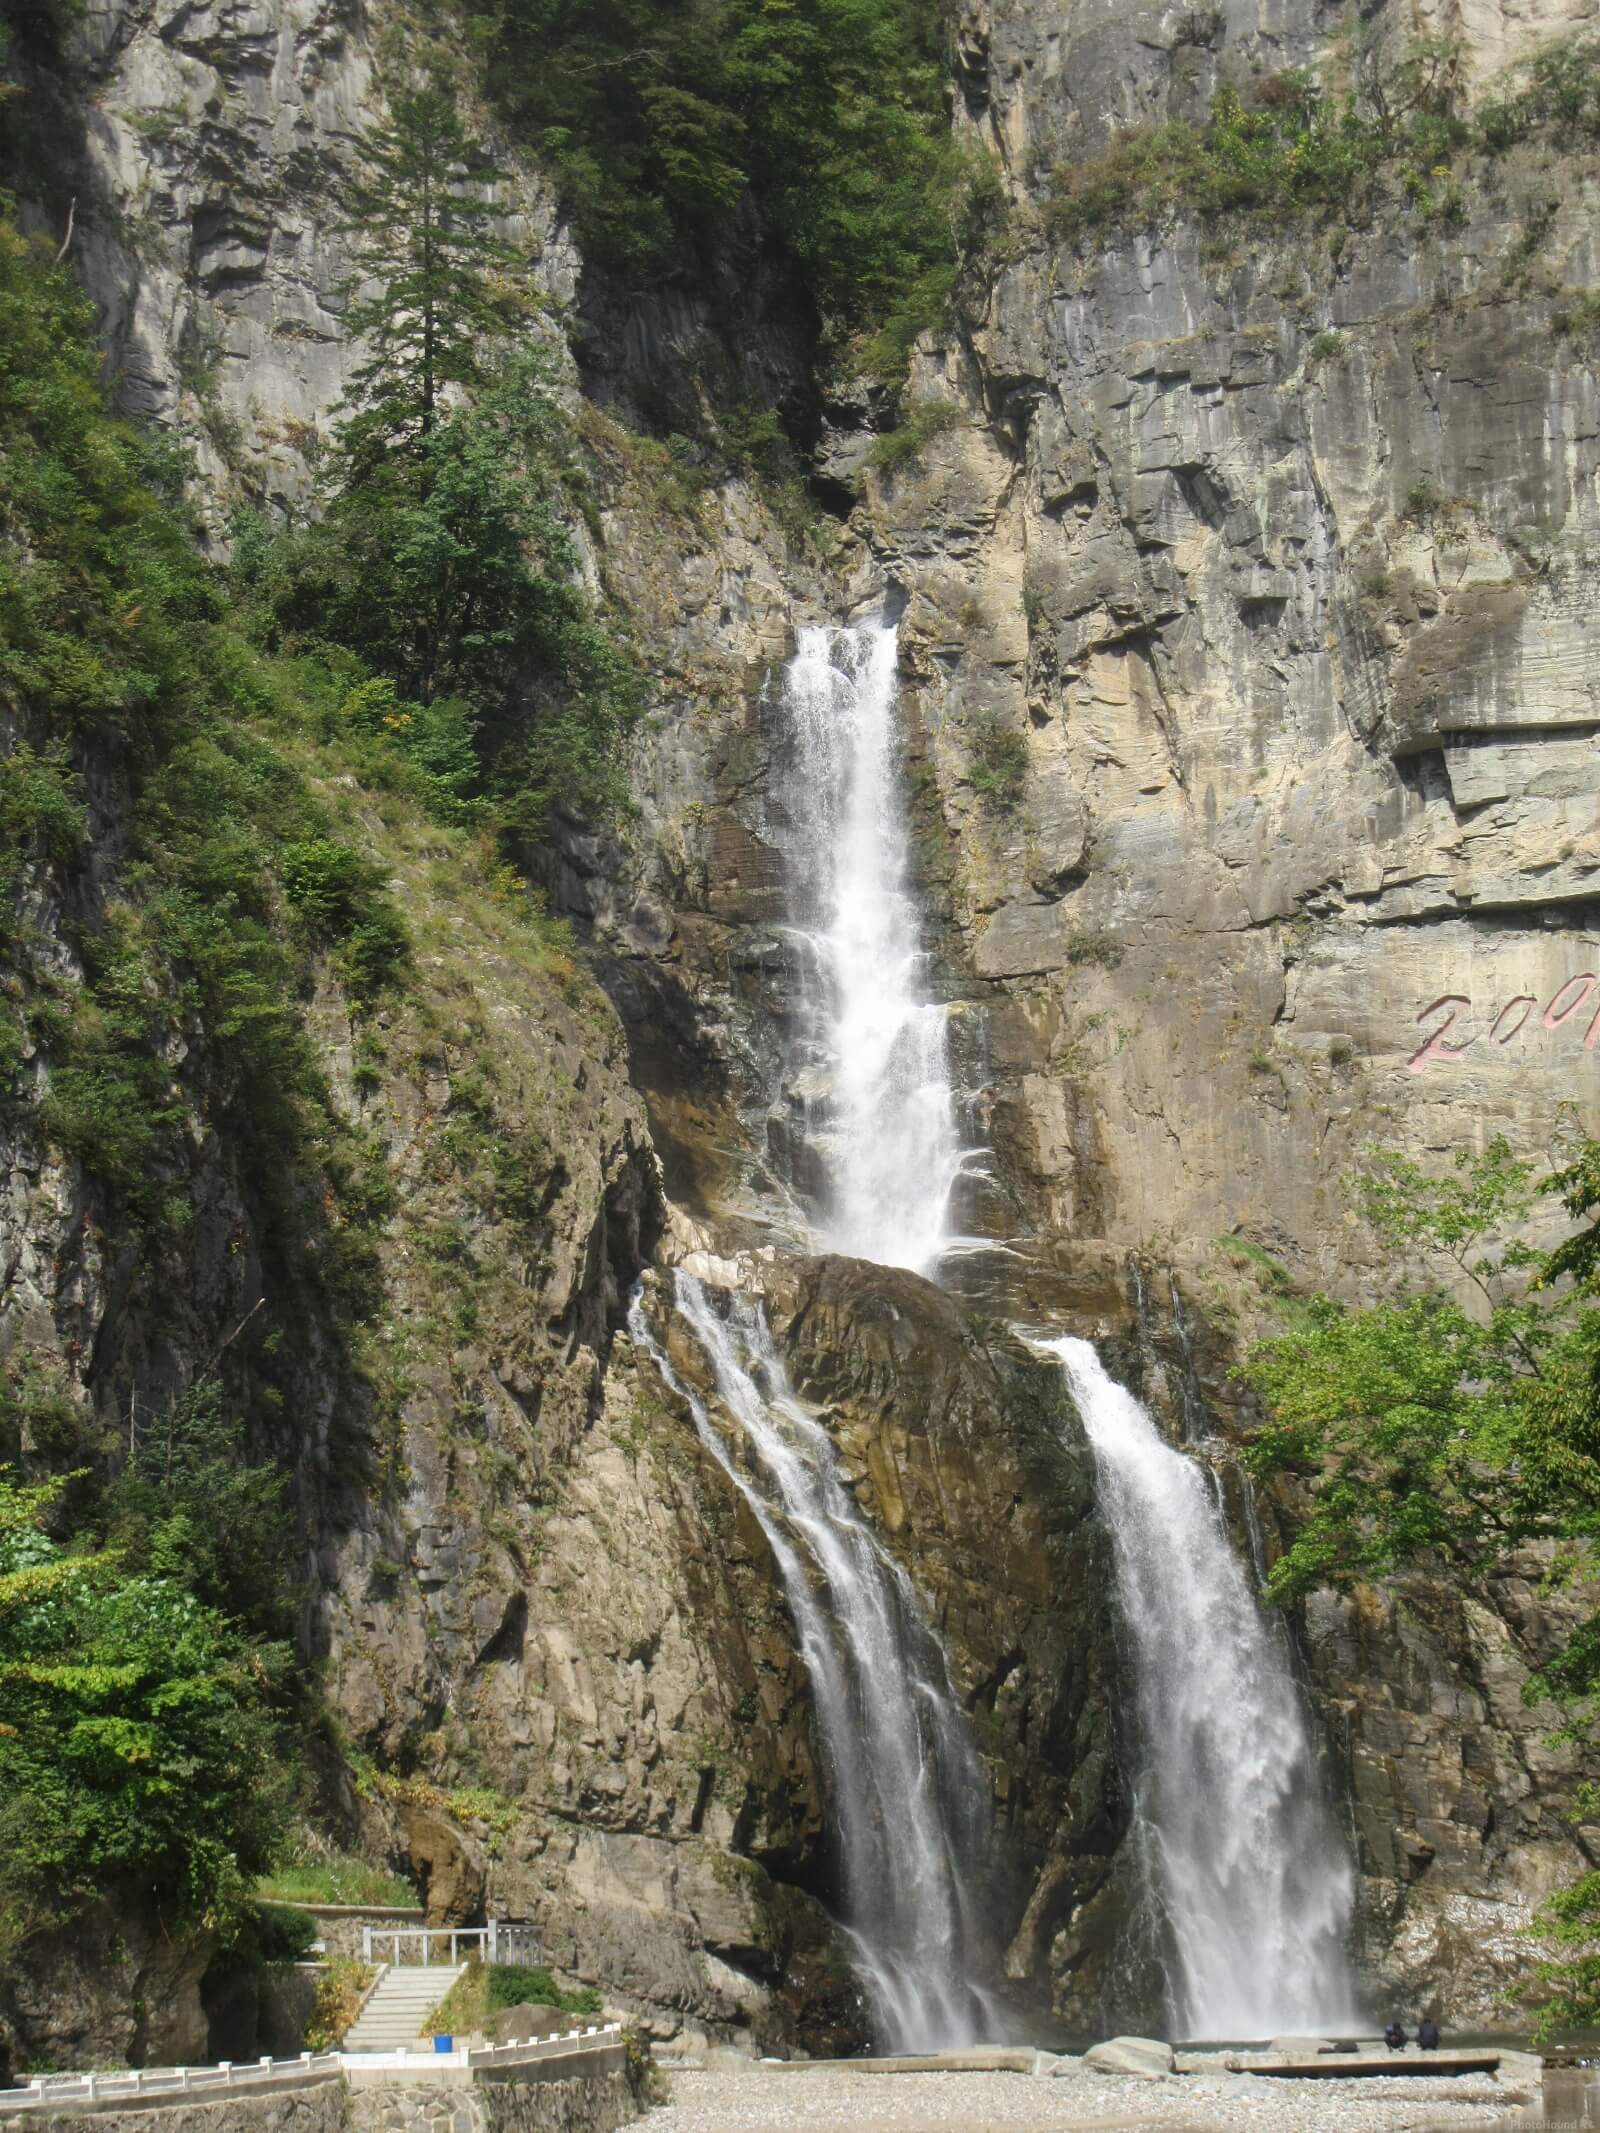 Image of Ullim Falls by Krzysztof Kozlowski